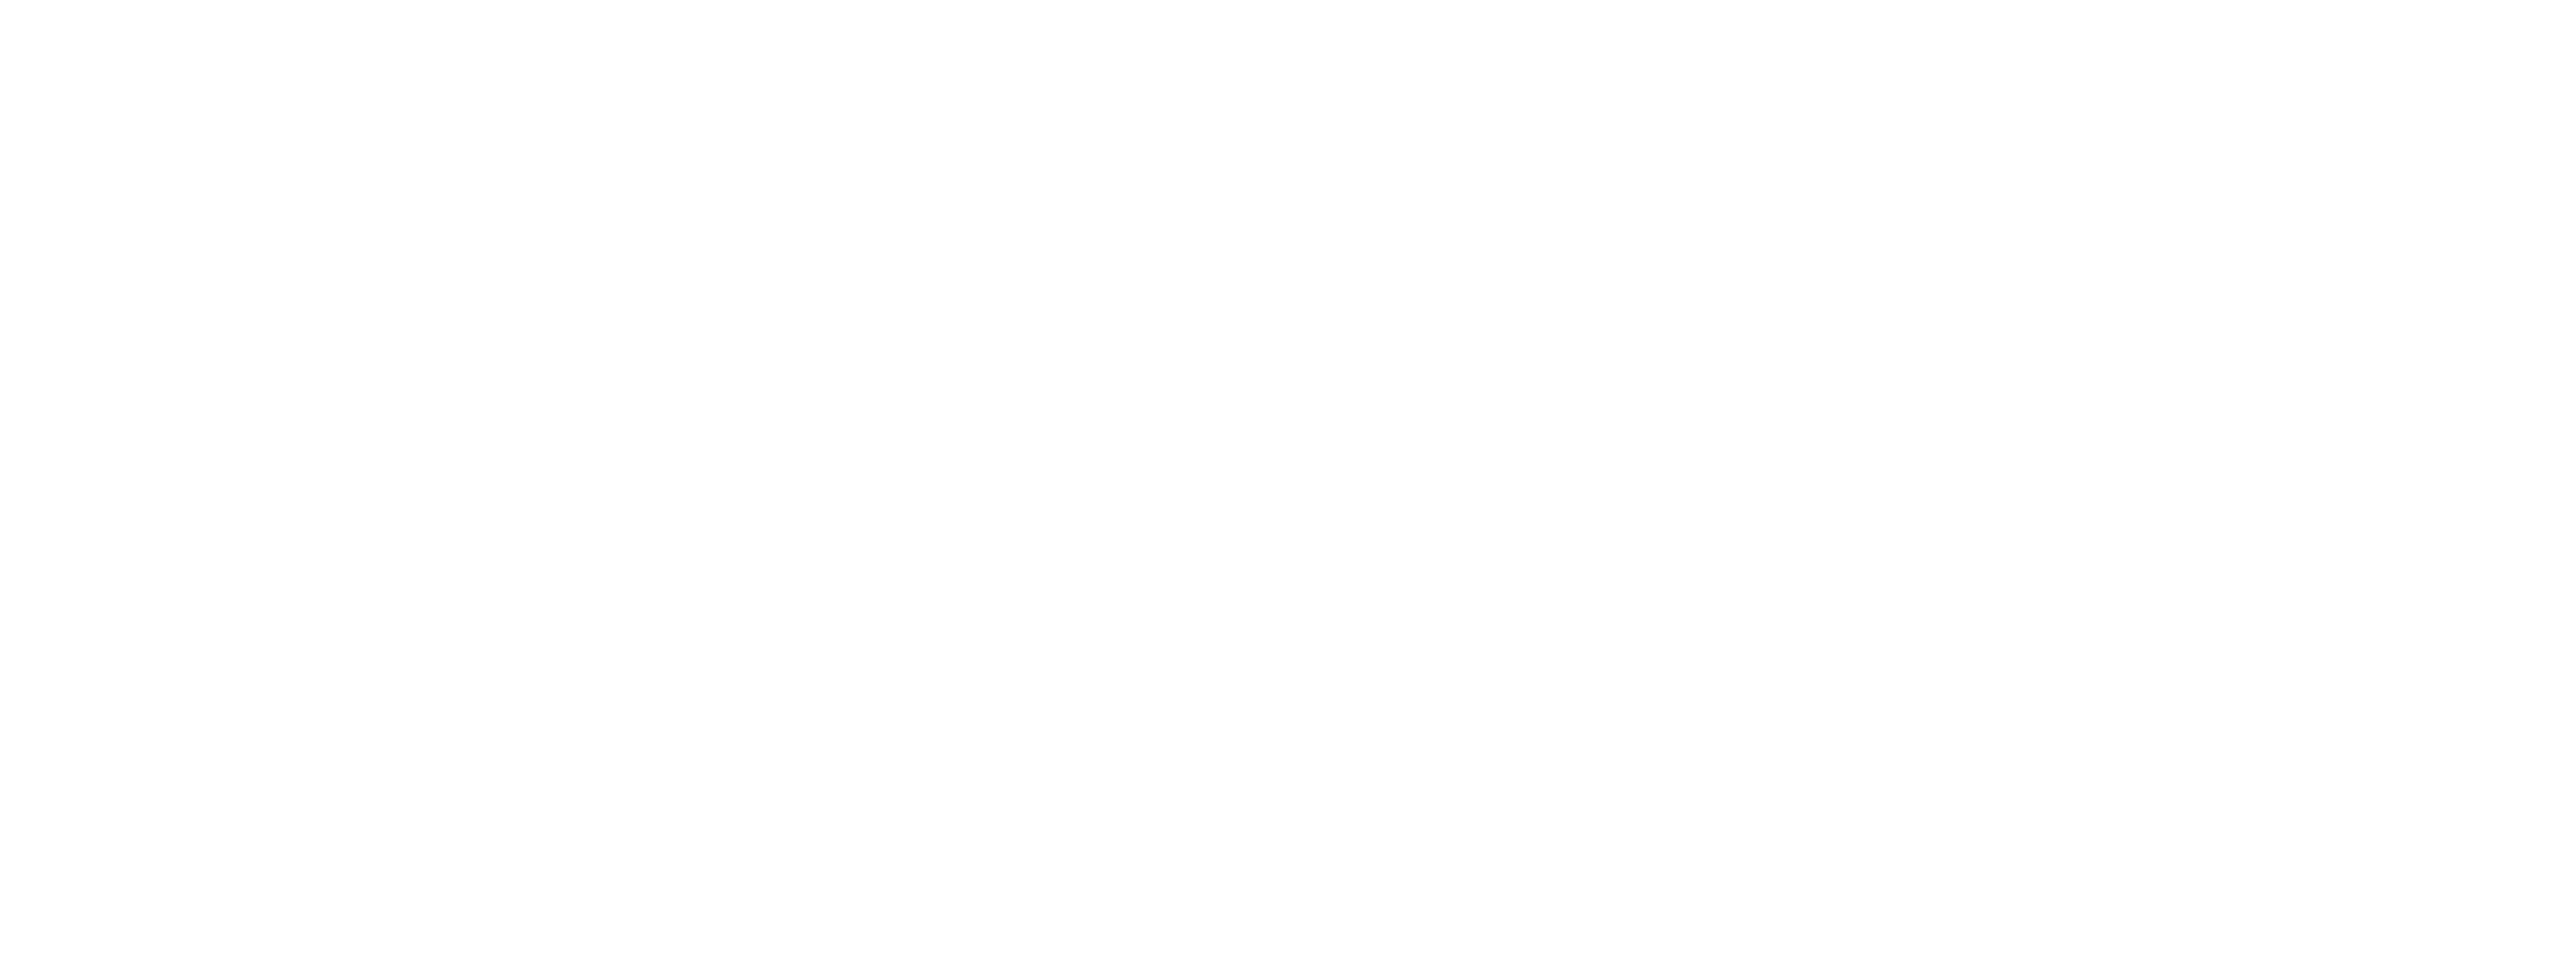 Digiboo - первая образовательная видеоплатформа